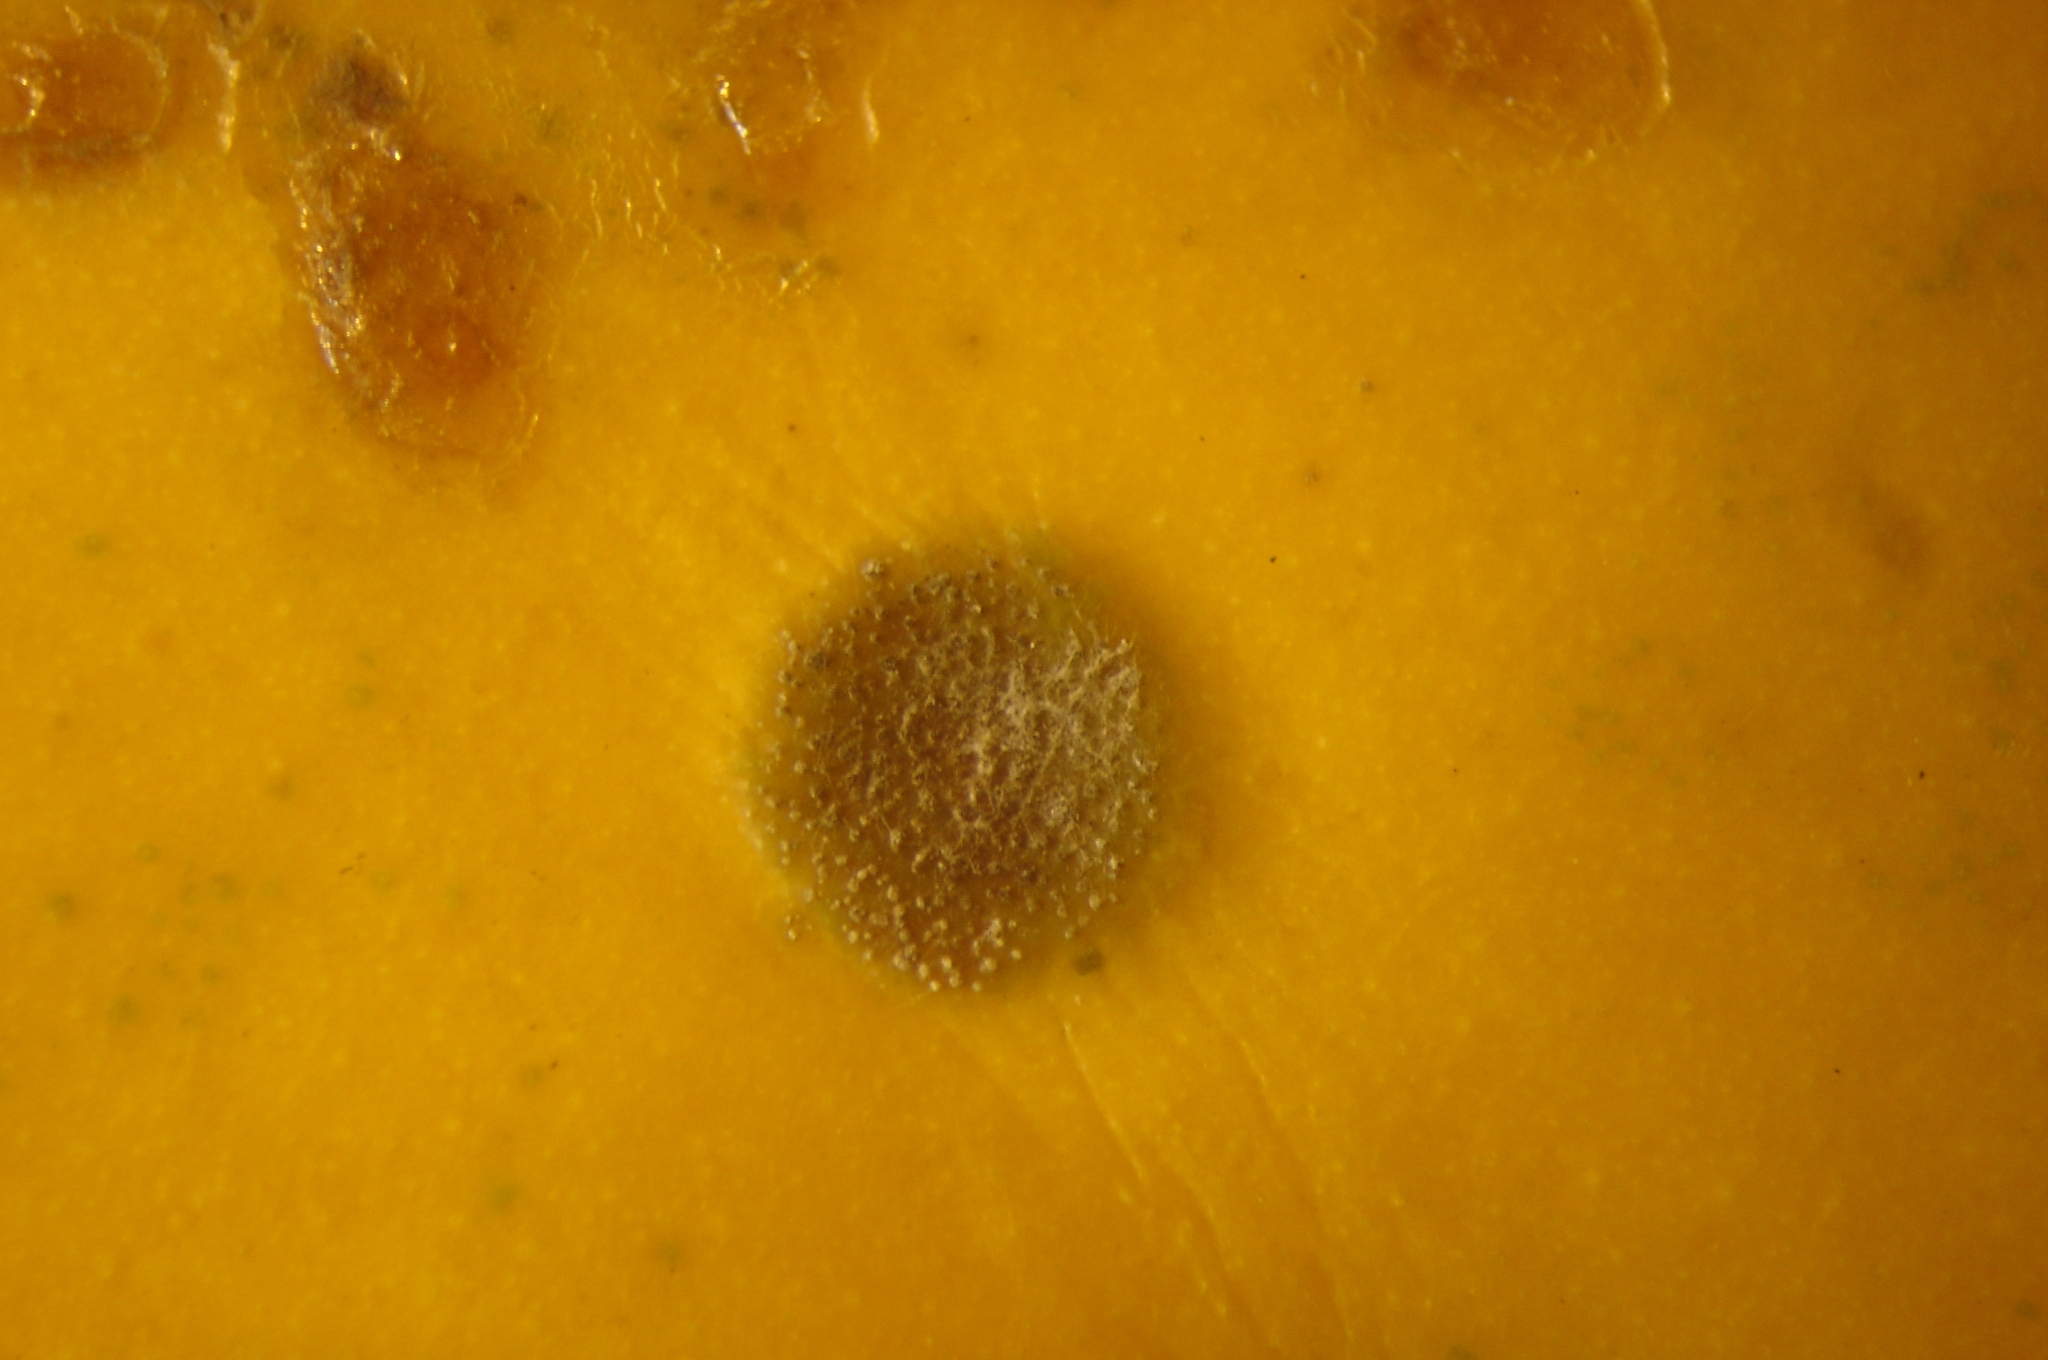 <p><b><p>Detalhe da lesão, exibindo crescimento do fungo <em>Asperisporium caricae.</em></p></b></p><p>Autor: Josiane Takassaki Ferrari</p>